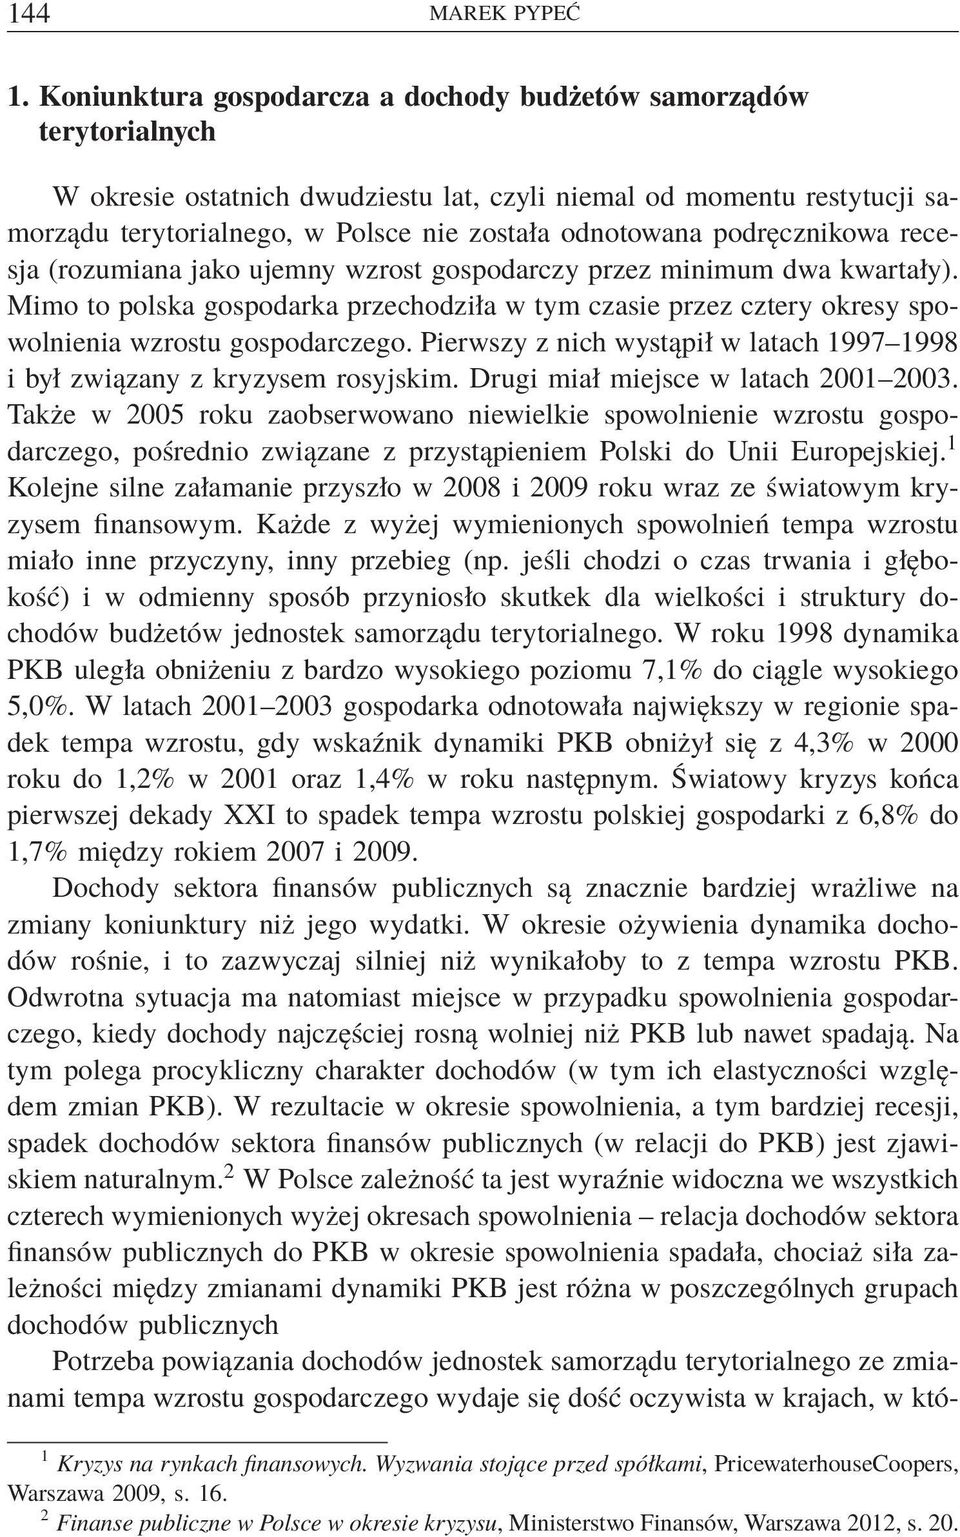 podręcznikowa recesja (rozumiana jako ujemny wzrost gospodarczy przez minimum dwa kwartały). Mimo to polska gospodarka przechodziła w tym czasie przez cztery okresy spowolnienia wzrostu gospodarczego.